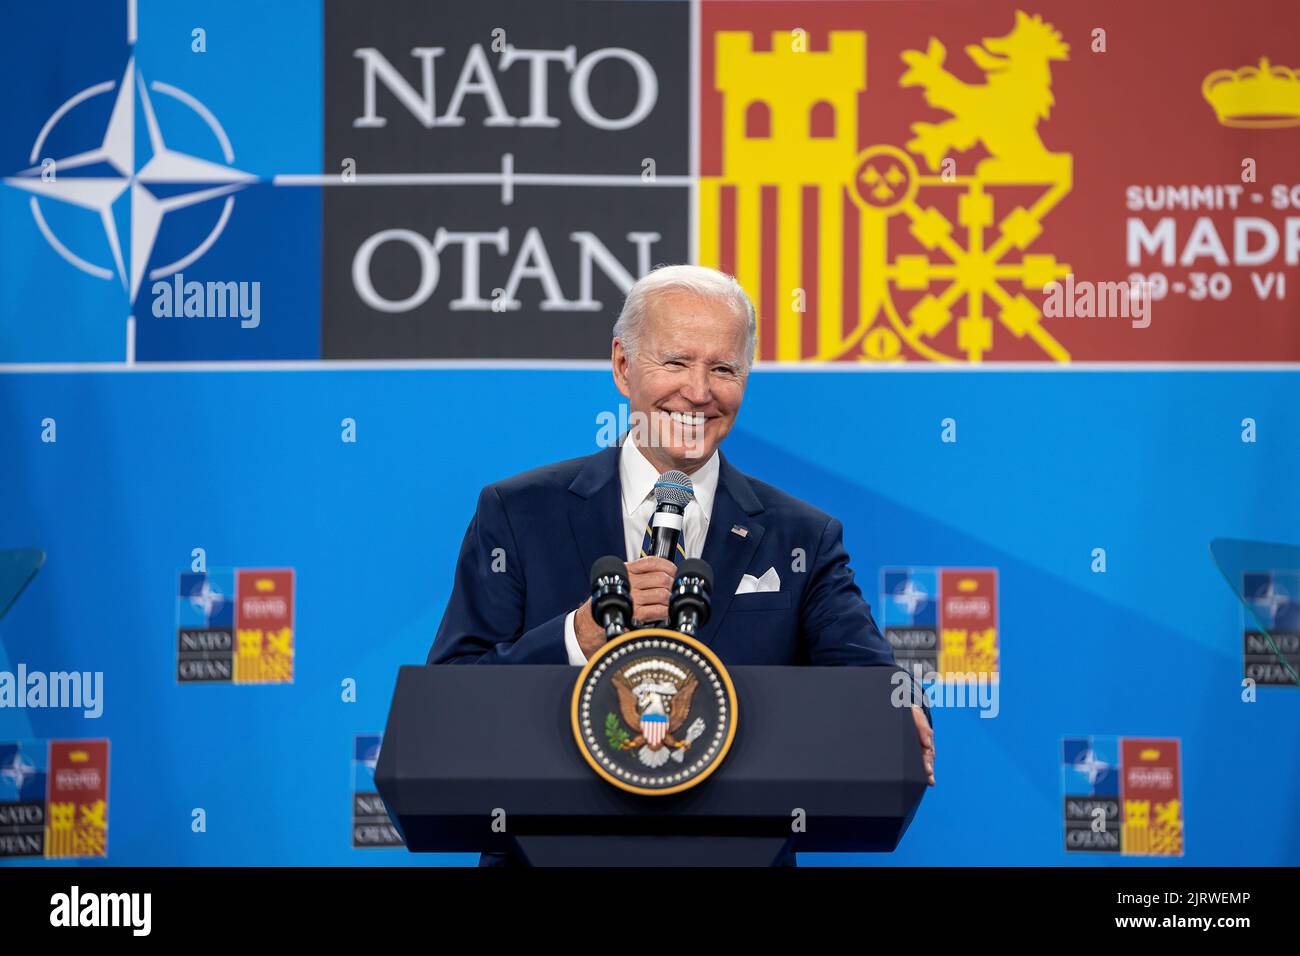 Präsident Joe Biden hält am Donnerstag, den 30. Juni 2022, eine Pressekonferenz beim NATO-Gipfel auf der IFEMA Madrid ab. (Offizielles Foto des Weißen Hauses von Carlos Fyfe) Stockfoto